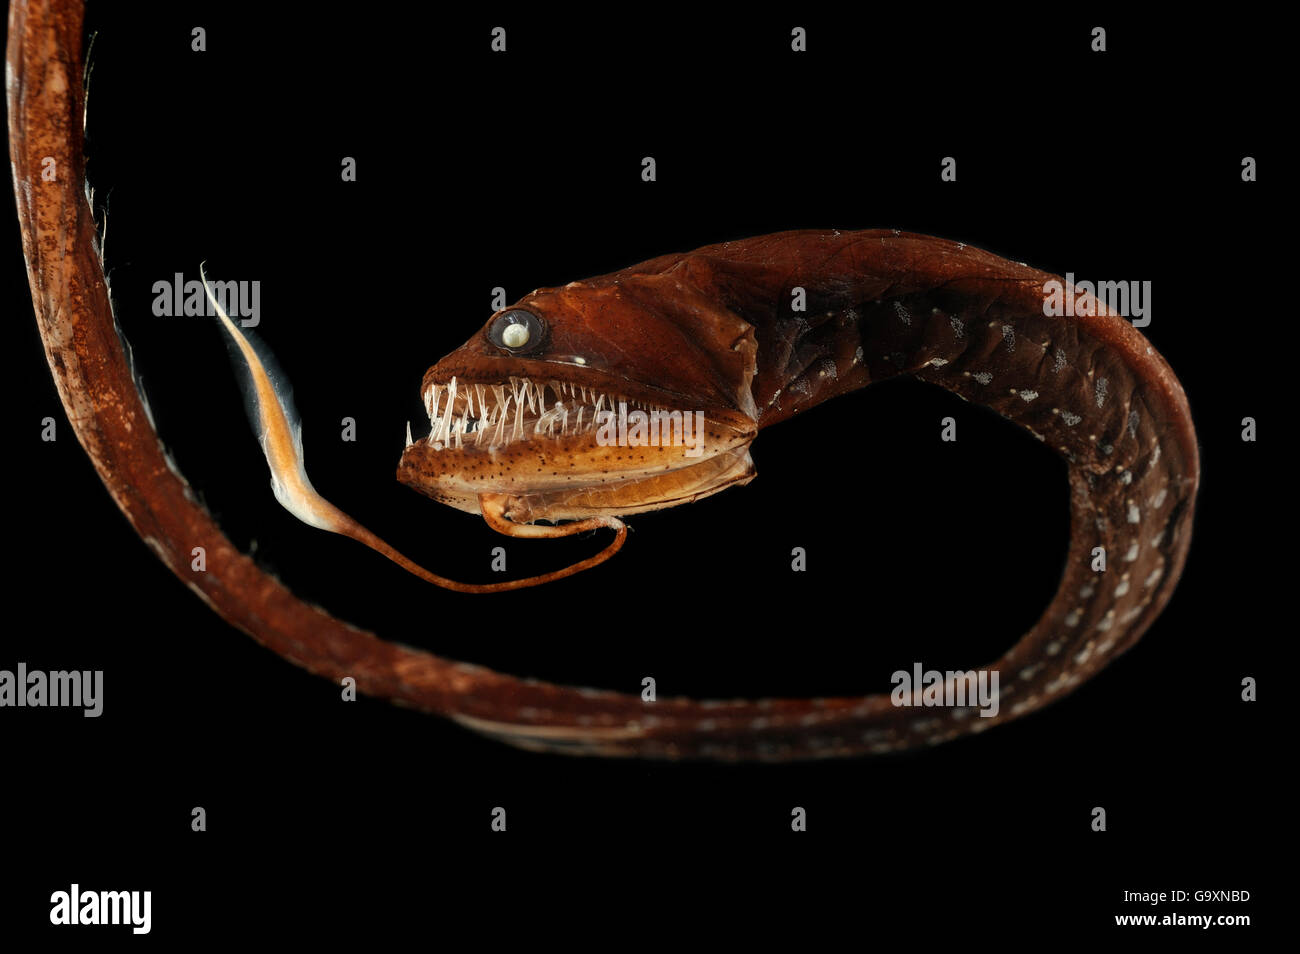 Sawtail (poisson ruban Idiacanthus fasciola) de l'océan Atlantique, à une profondeur de 800-1000m. Banque D'Images